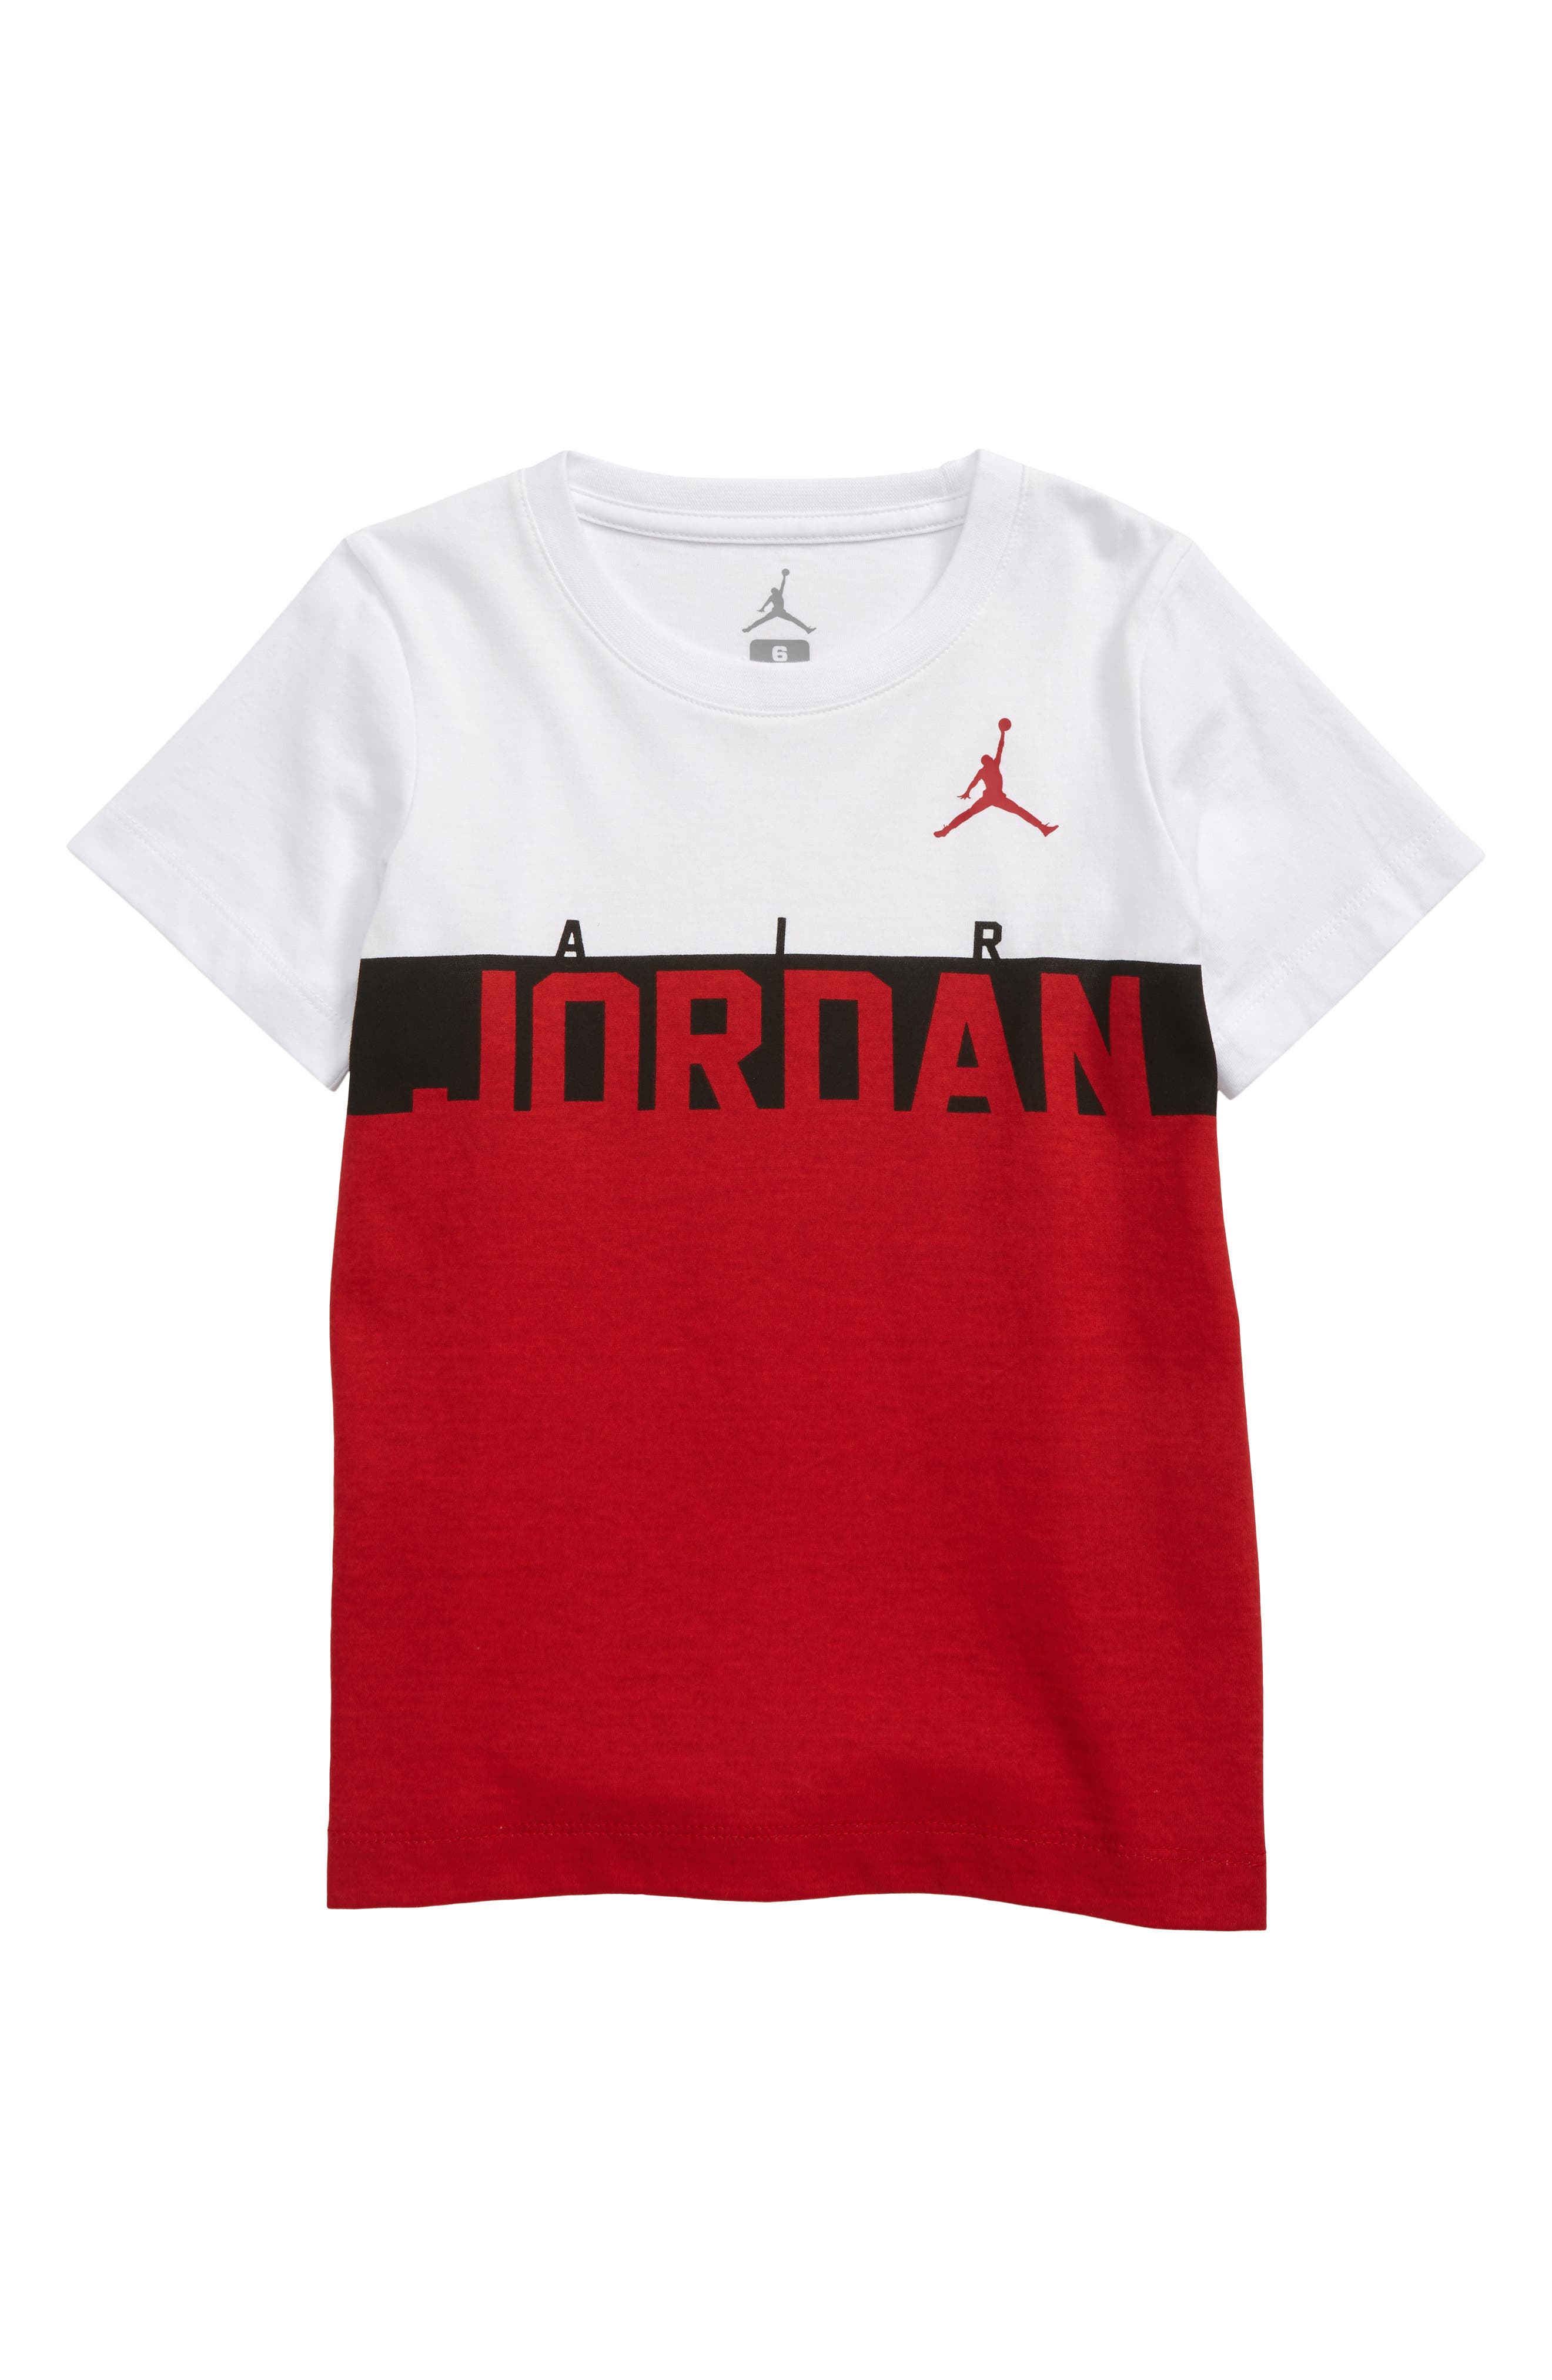 boys jordan shirts